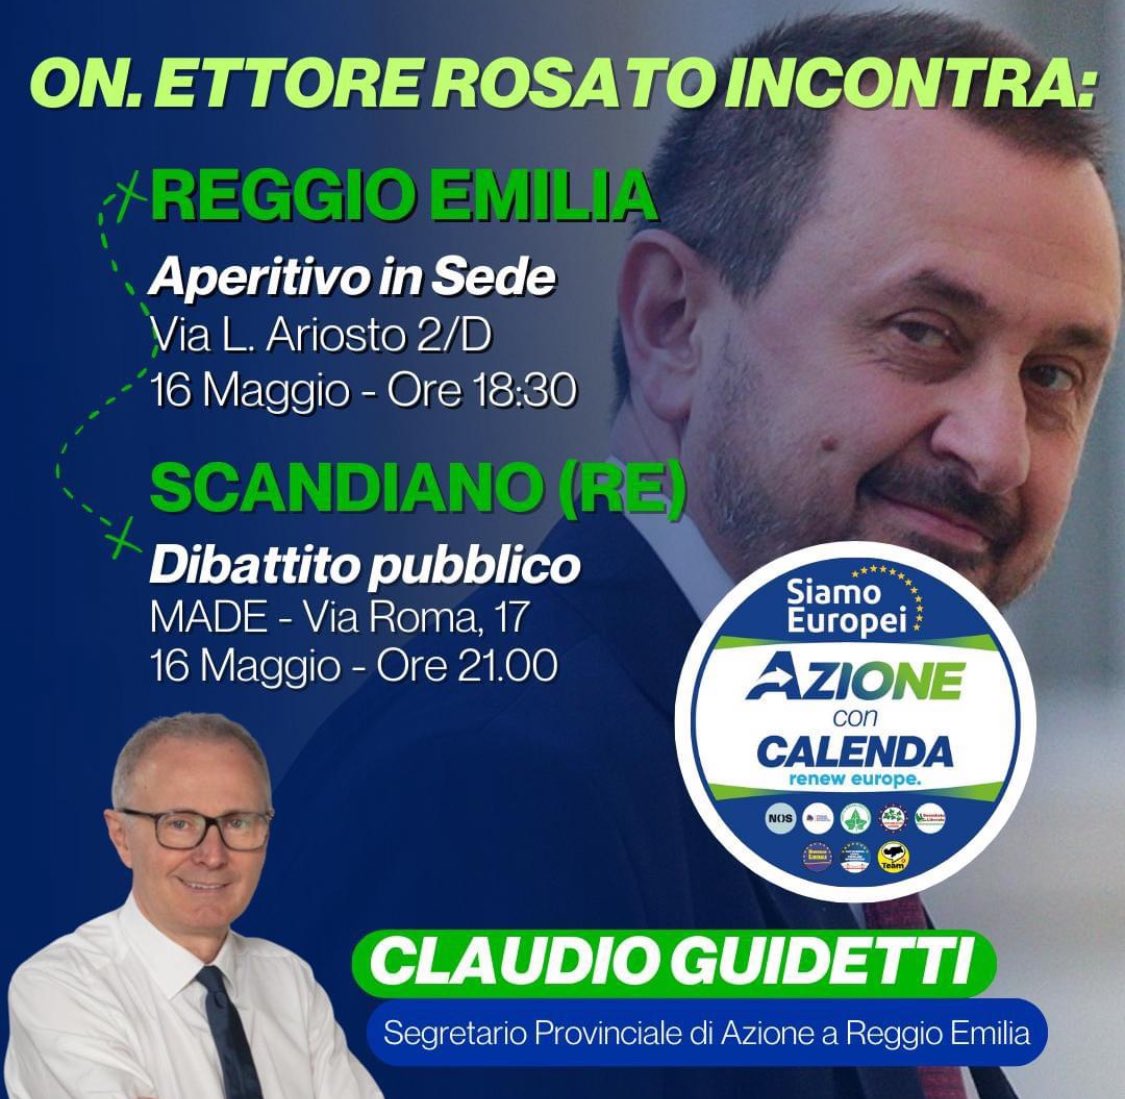 Domani sarò in #EmiliaRomagna insieme a @ClaudioGuidetti per degli incontri sul territorio. 

📌Appuntamento alle 18:30 a Reggio Emilia per un aperitivo insieme e alle 21:00 a Scandiano per un dibattito pubblico su Europa e sul nostro progetto per il futuro dell’Unione. 
Vi…